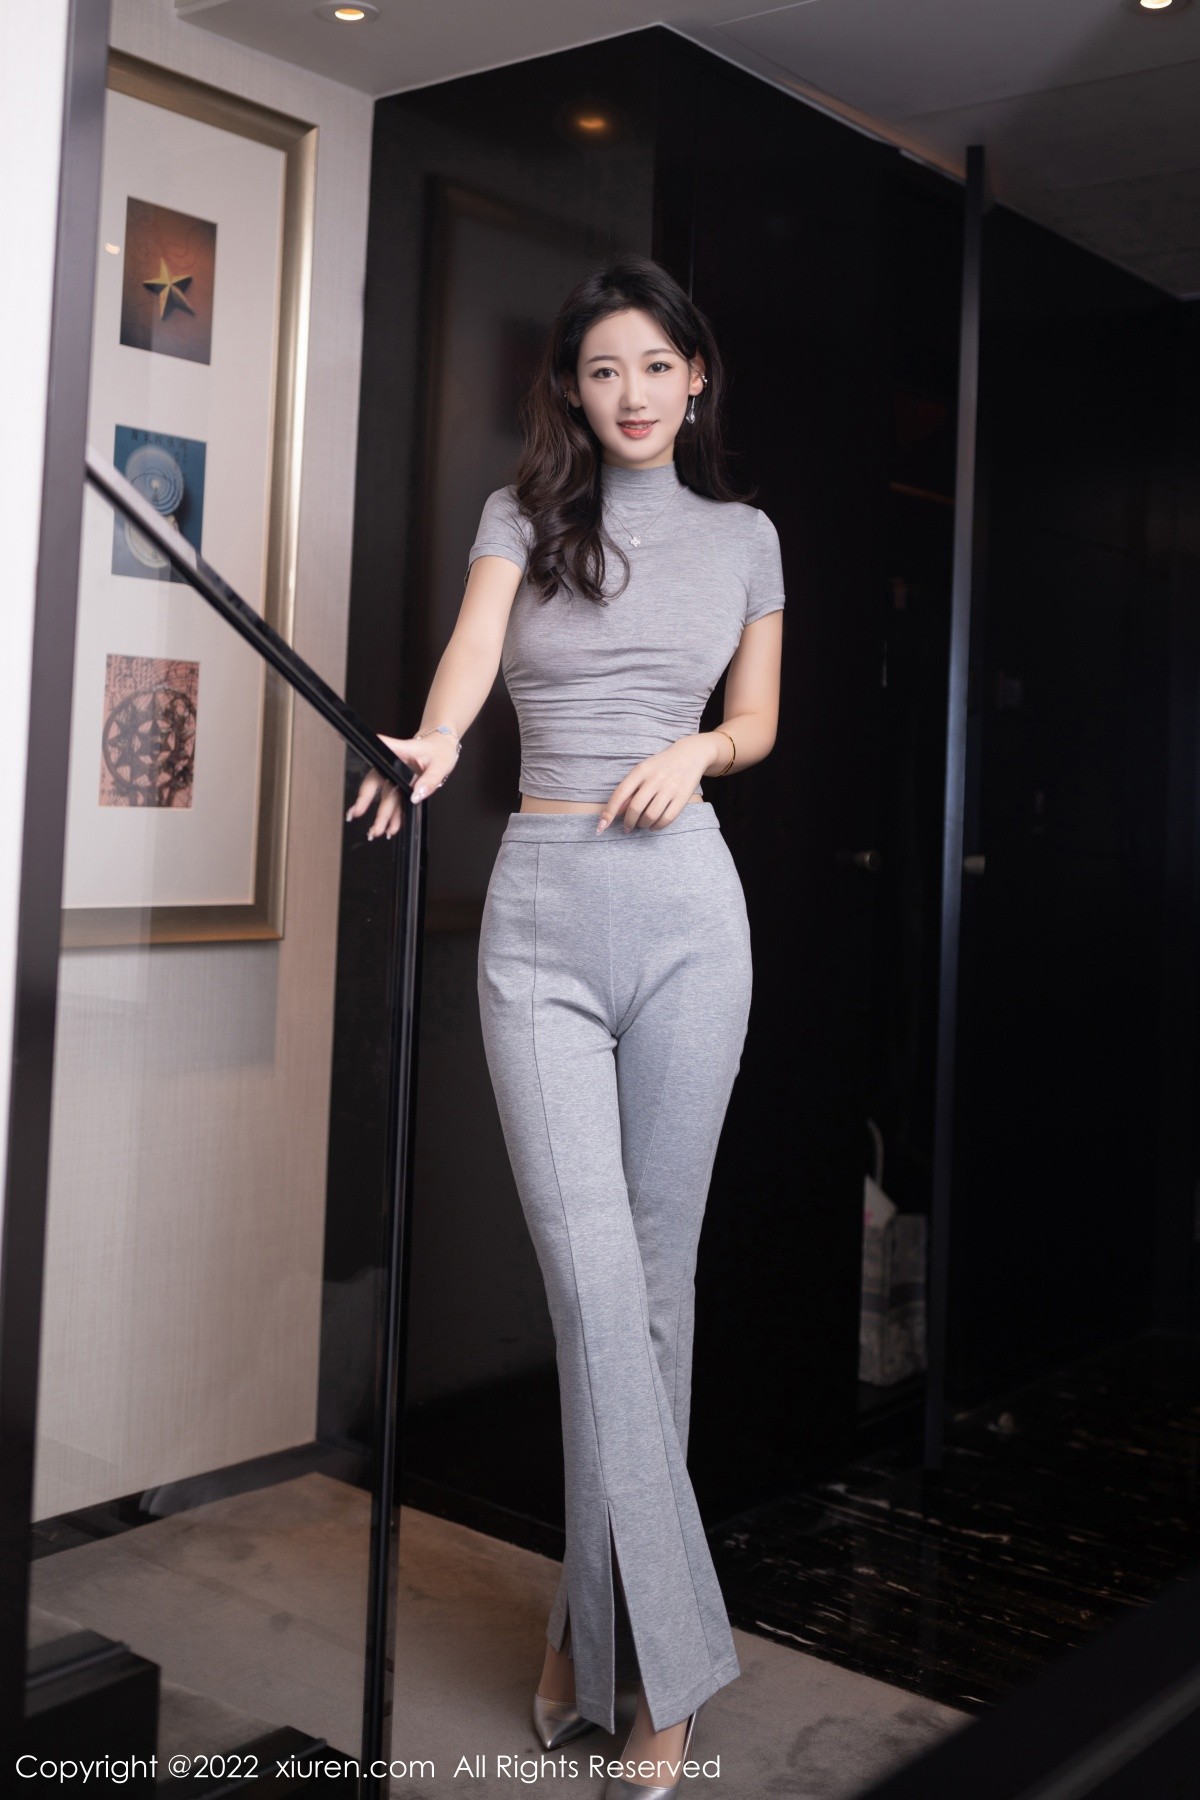 模特唐安琪北京旅拍性感灰色紧身套装半脱露蕾丝内裤诱惑写真